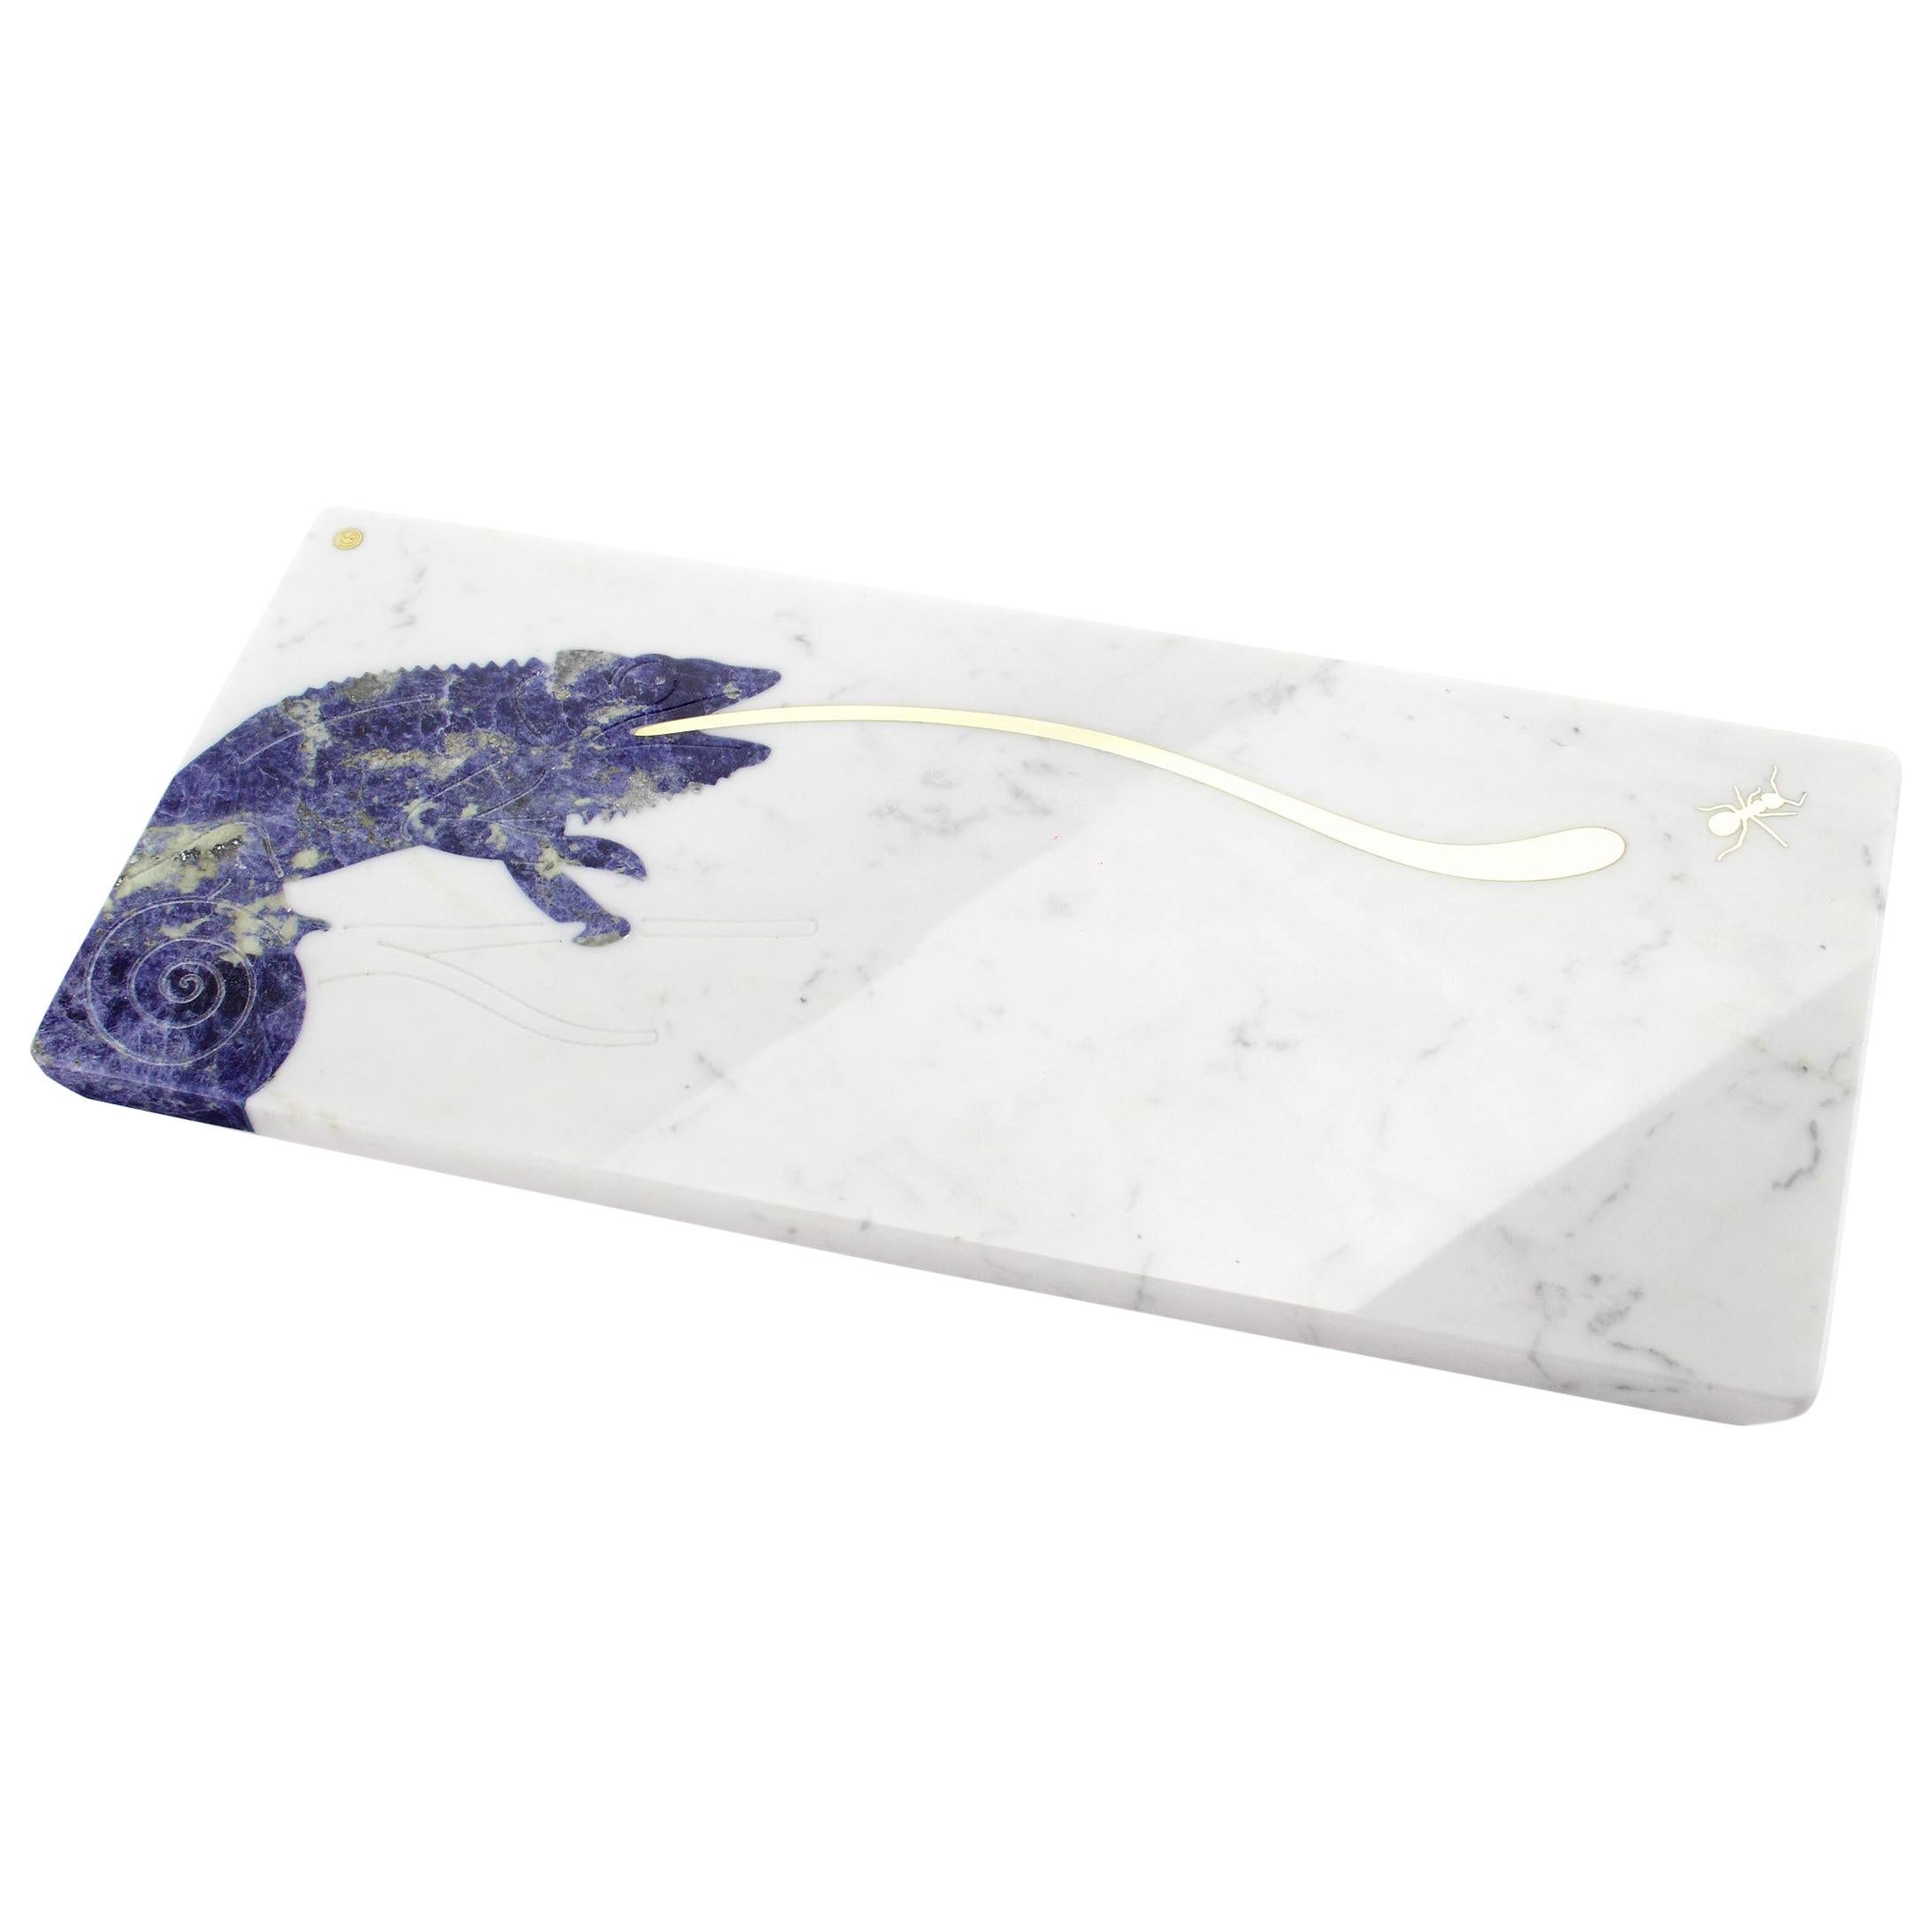 Service de table sodalite bleue en marbre blanc et pierres précieuses, fabriqué à la main en Italie en vente